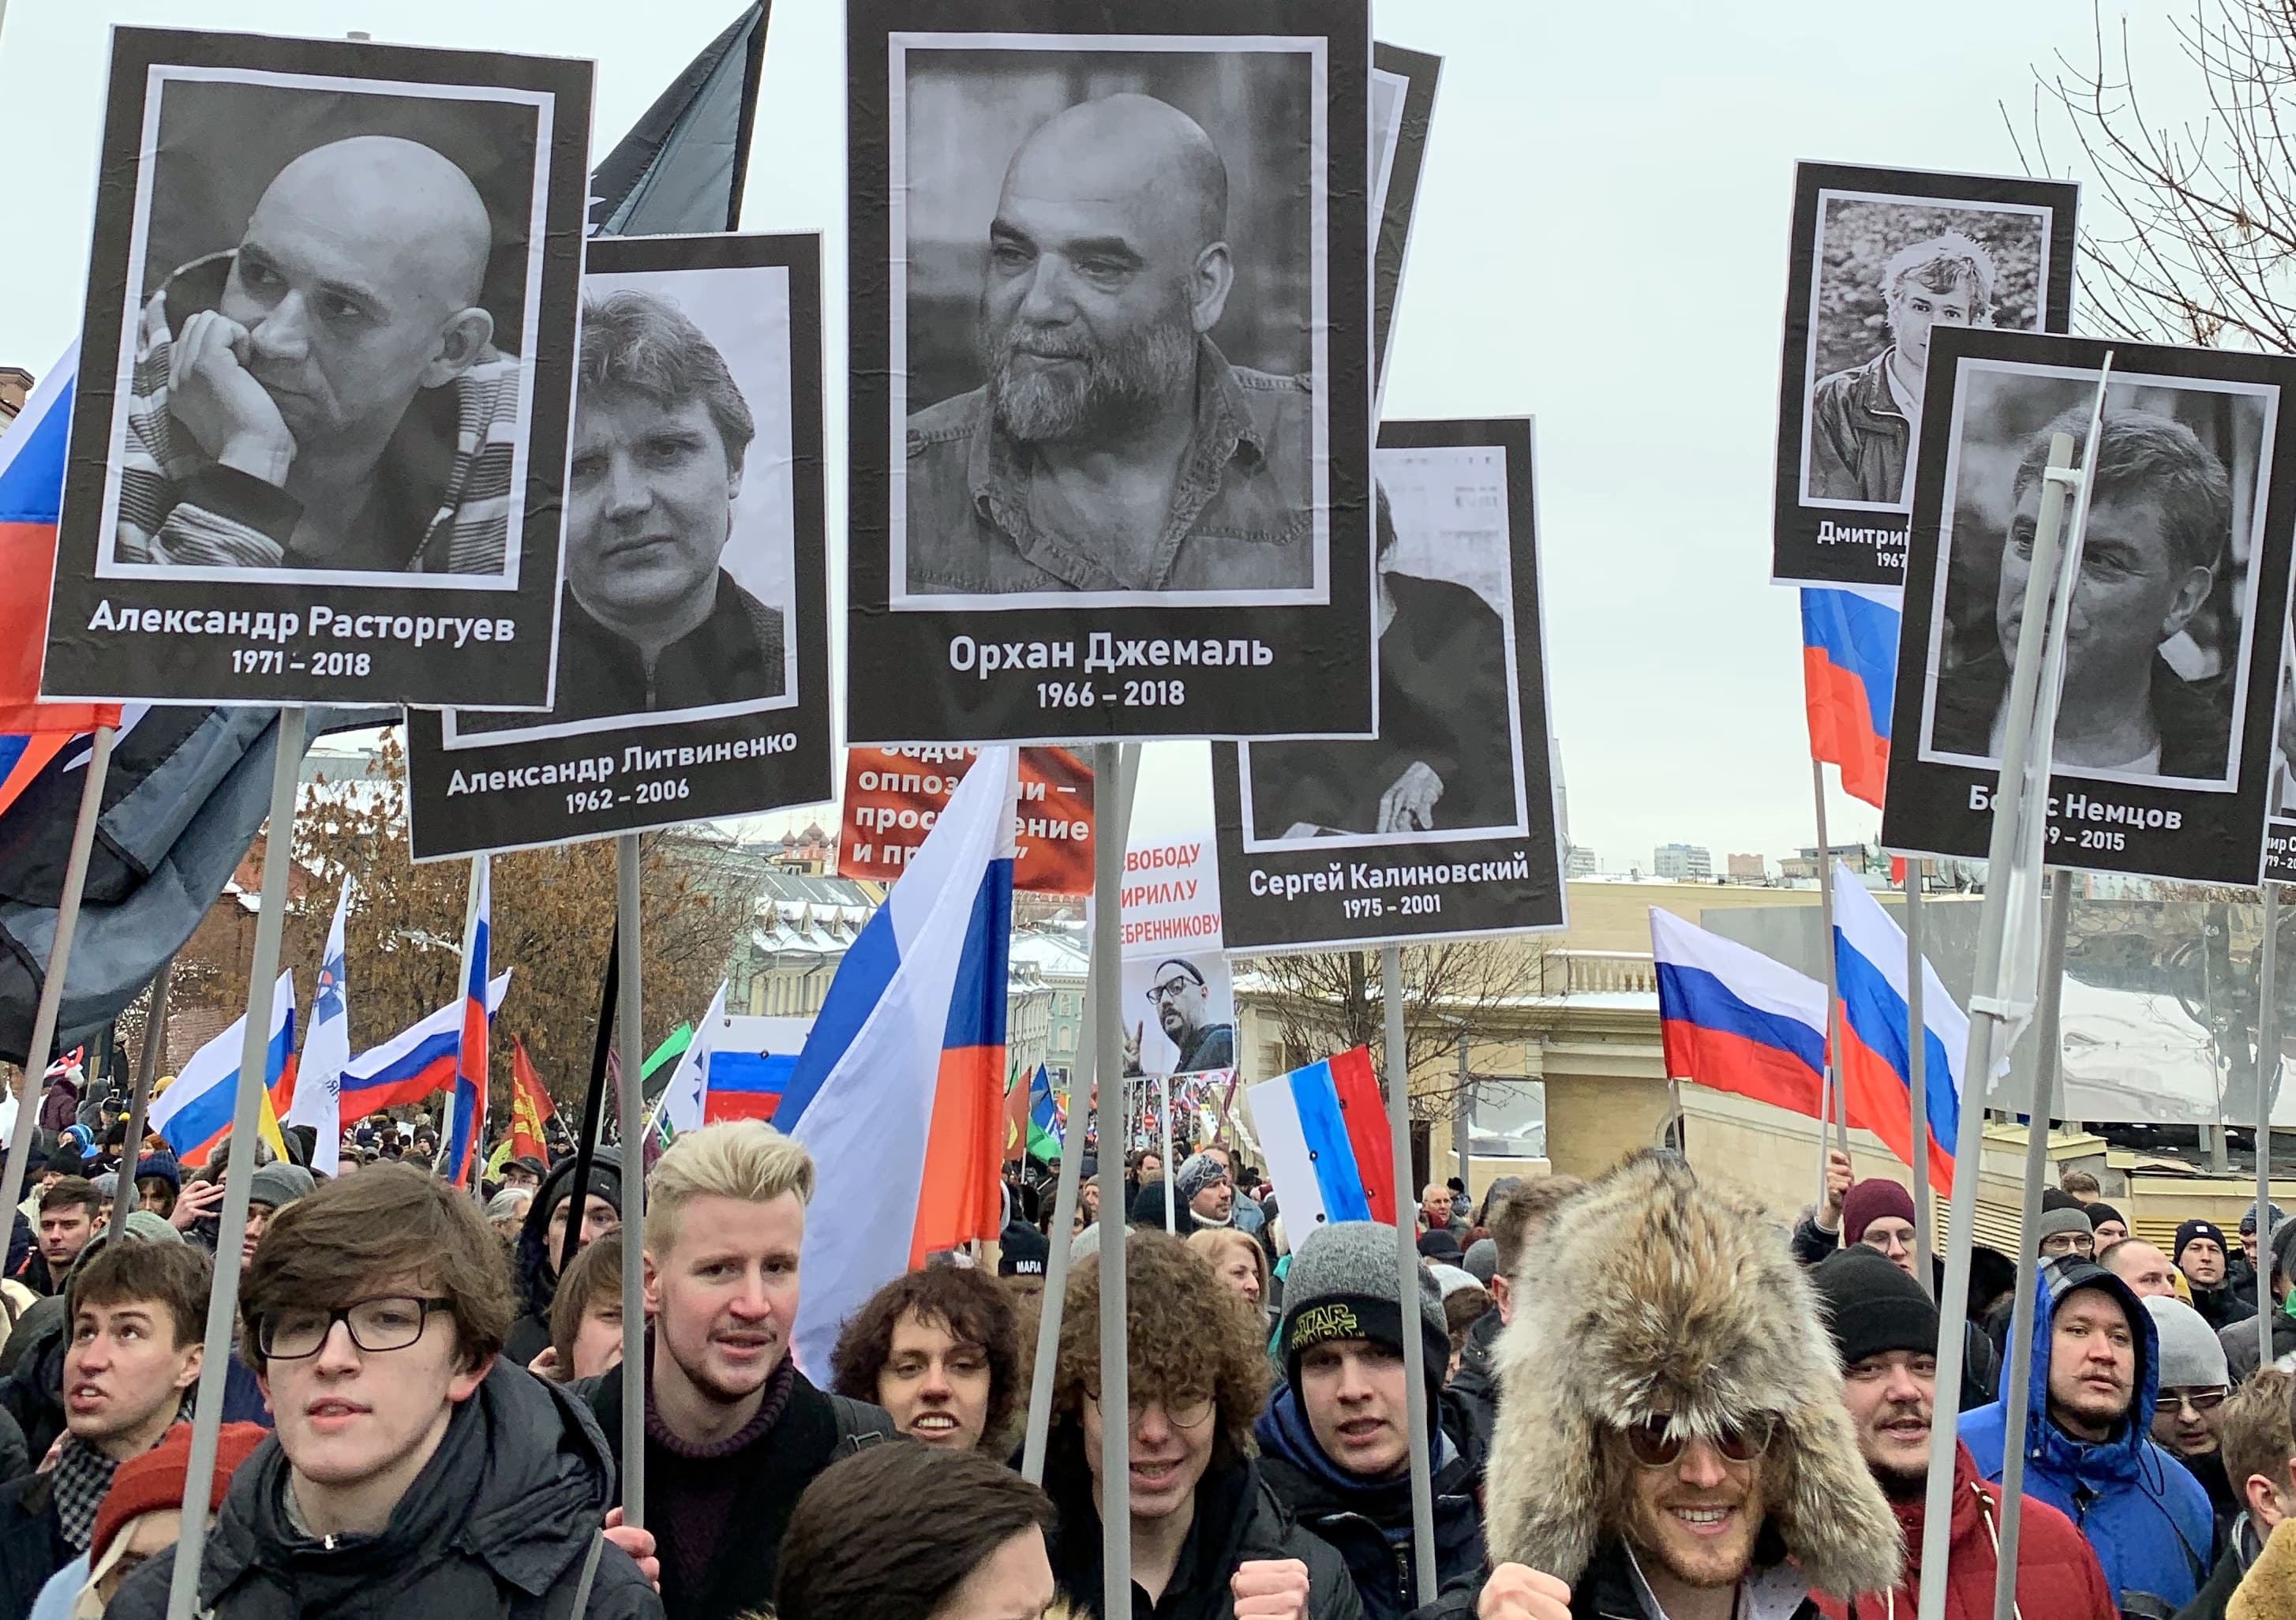 Активисты принесли на марш портреты убитого Немцова и других инакомыслящих.  Москва, 24 февраля 2019 года. Фото Олега Краснова для "Кавказского узла".